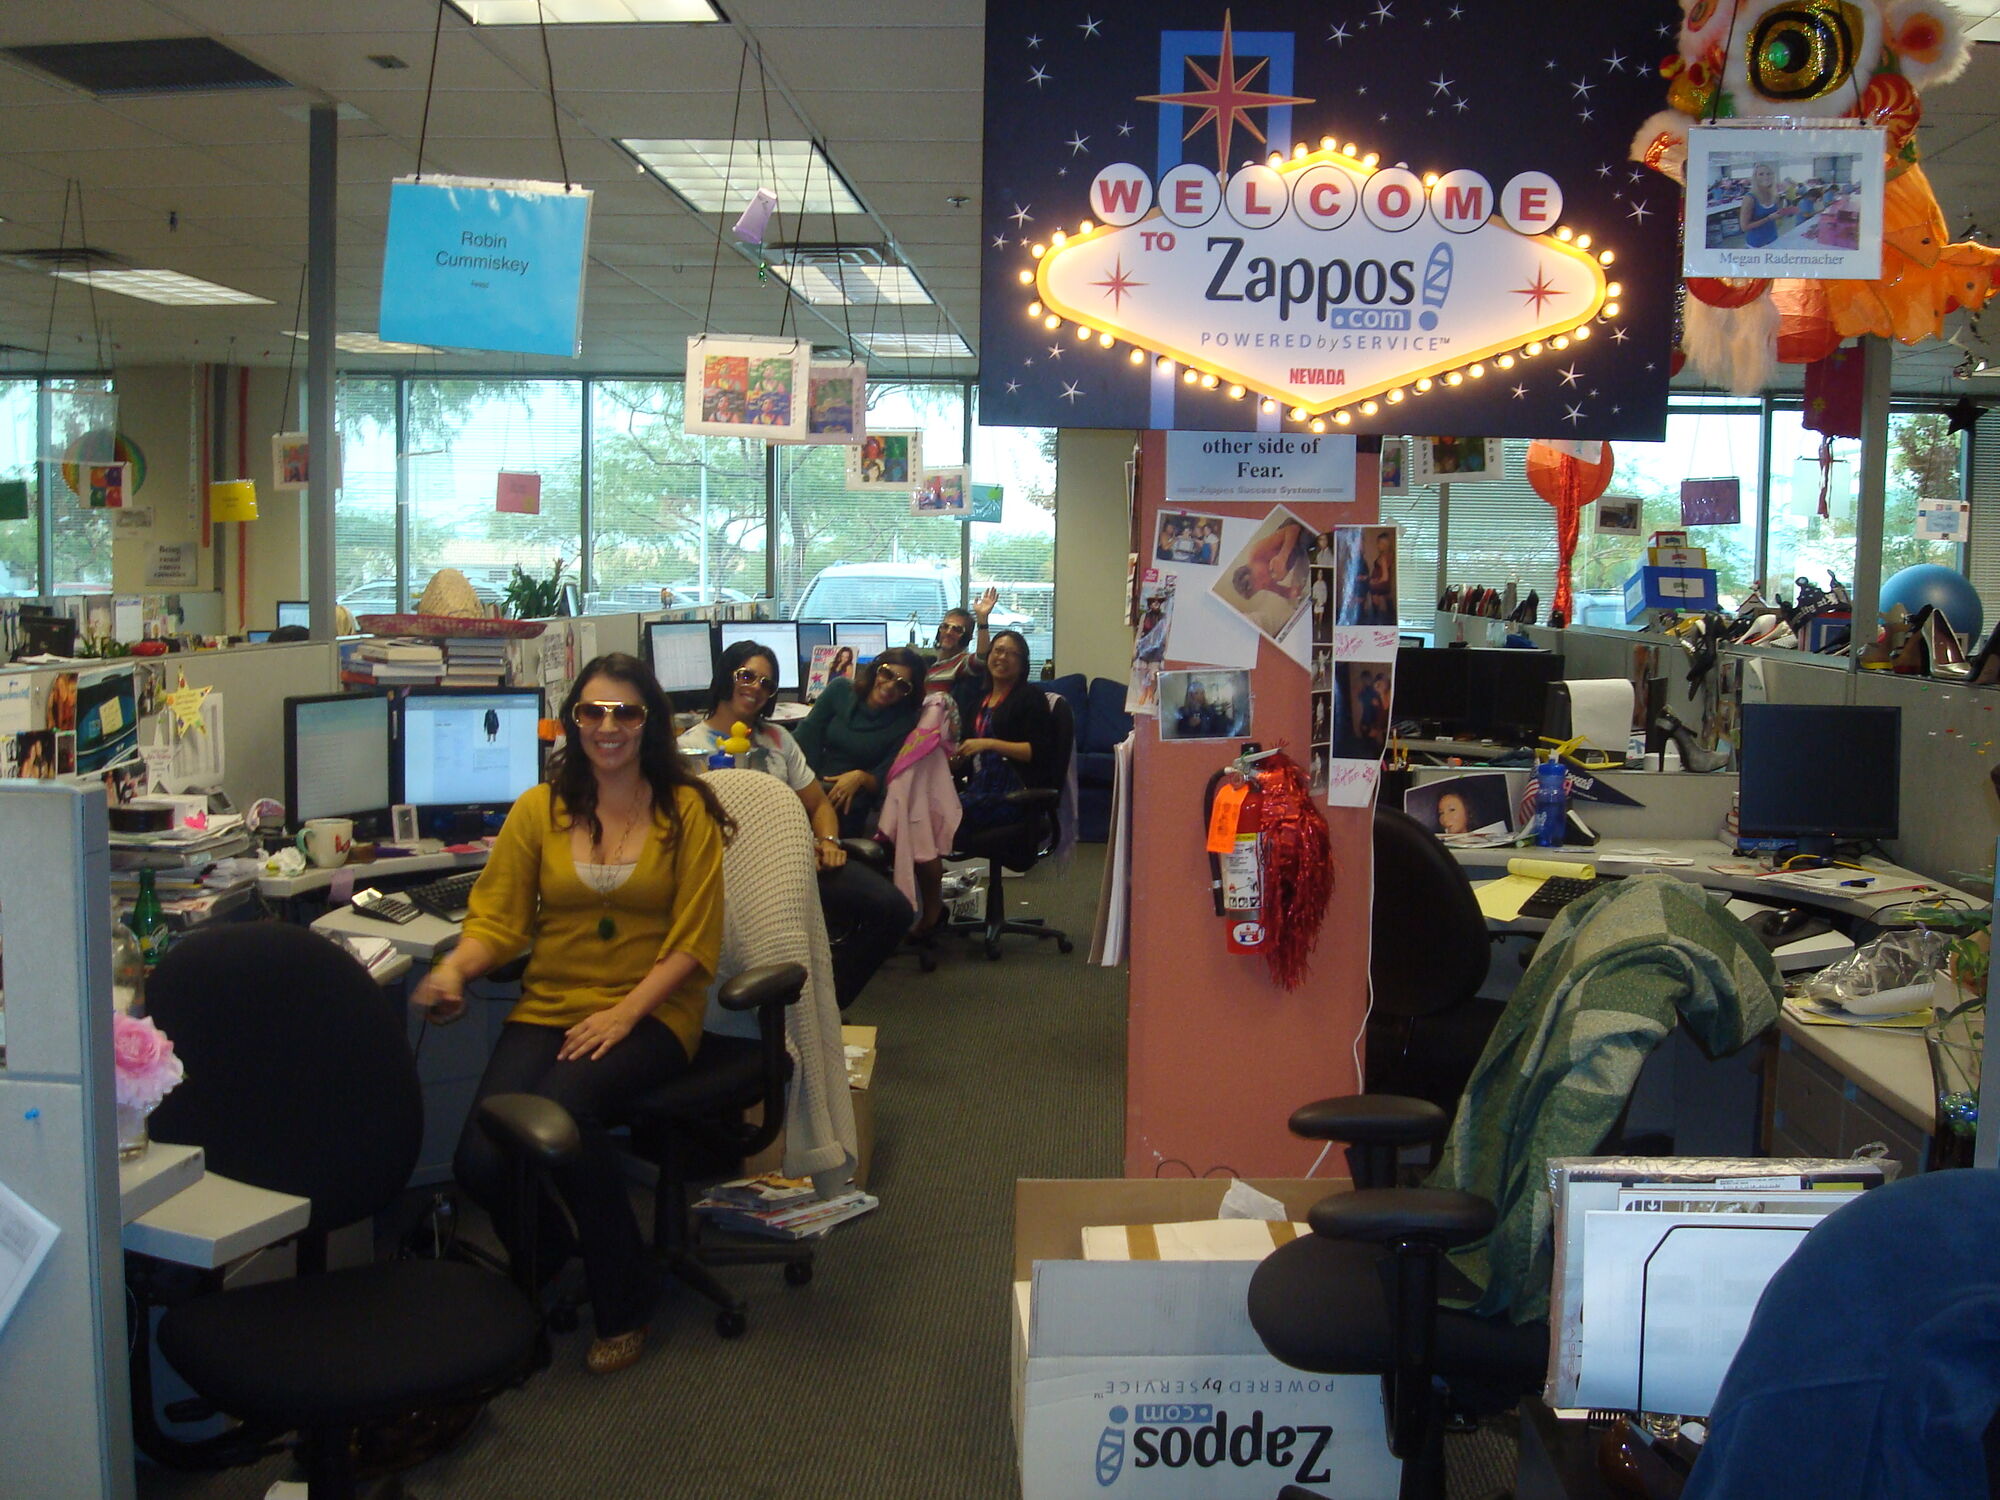 Корпоративная культура №1 в мире. 10 правил компании Zappos